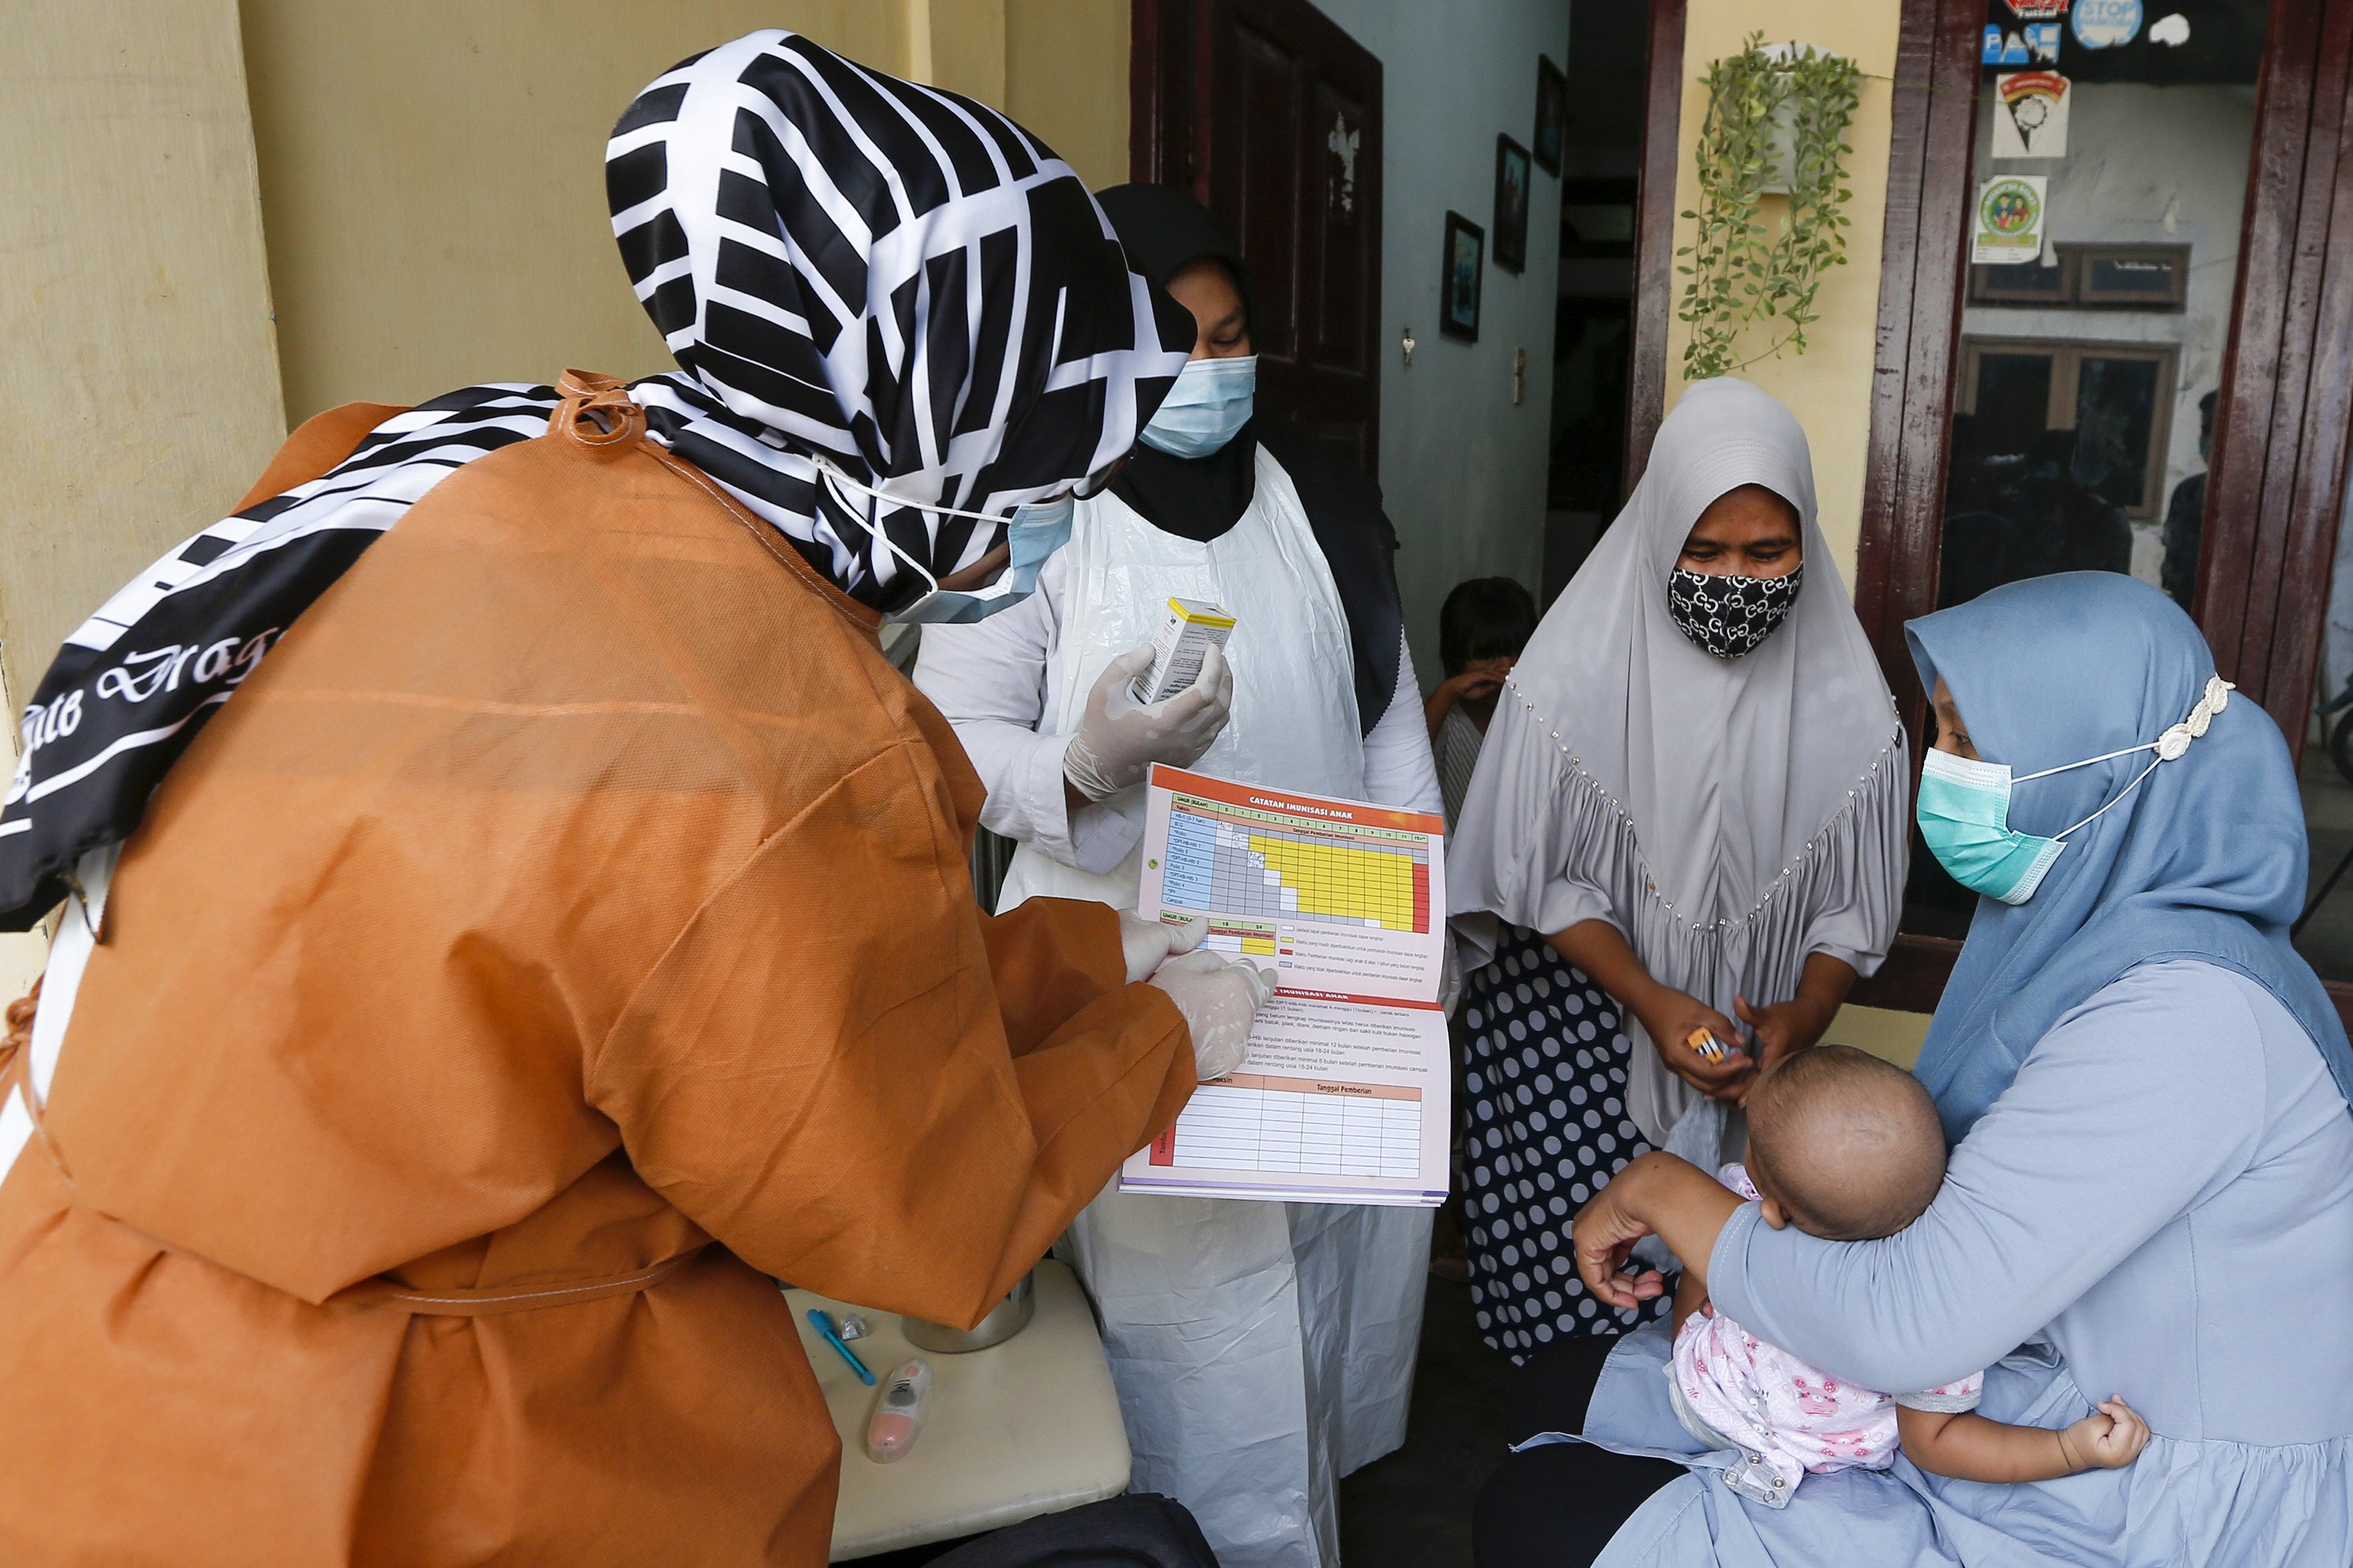 Petugas kesehatan puskesmas (kiri) menjelaskan jadwal dan jenis vaksin imunisasi yang akan diberikan pada balita di rumah mereka di Desa Rukoh, Banda Aceh, Aceh, Rabu (7/10/2020).